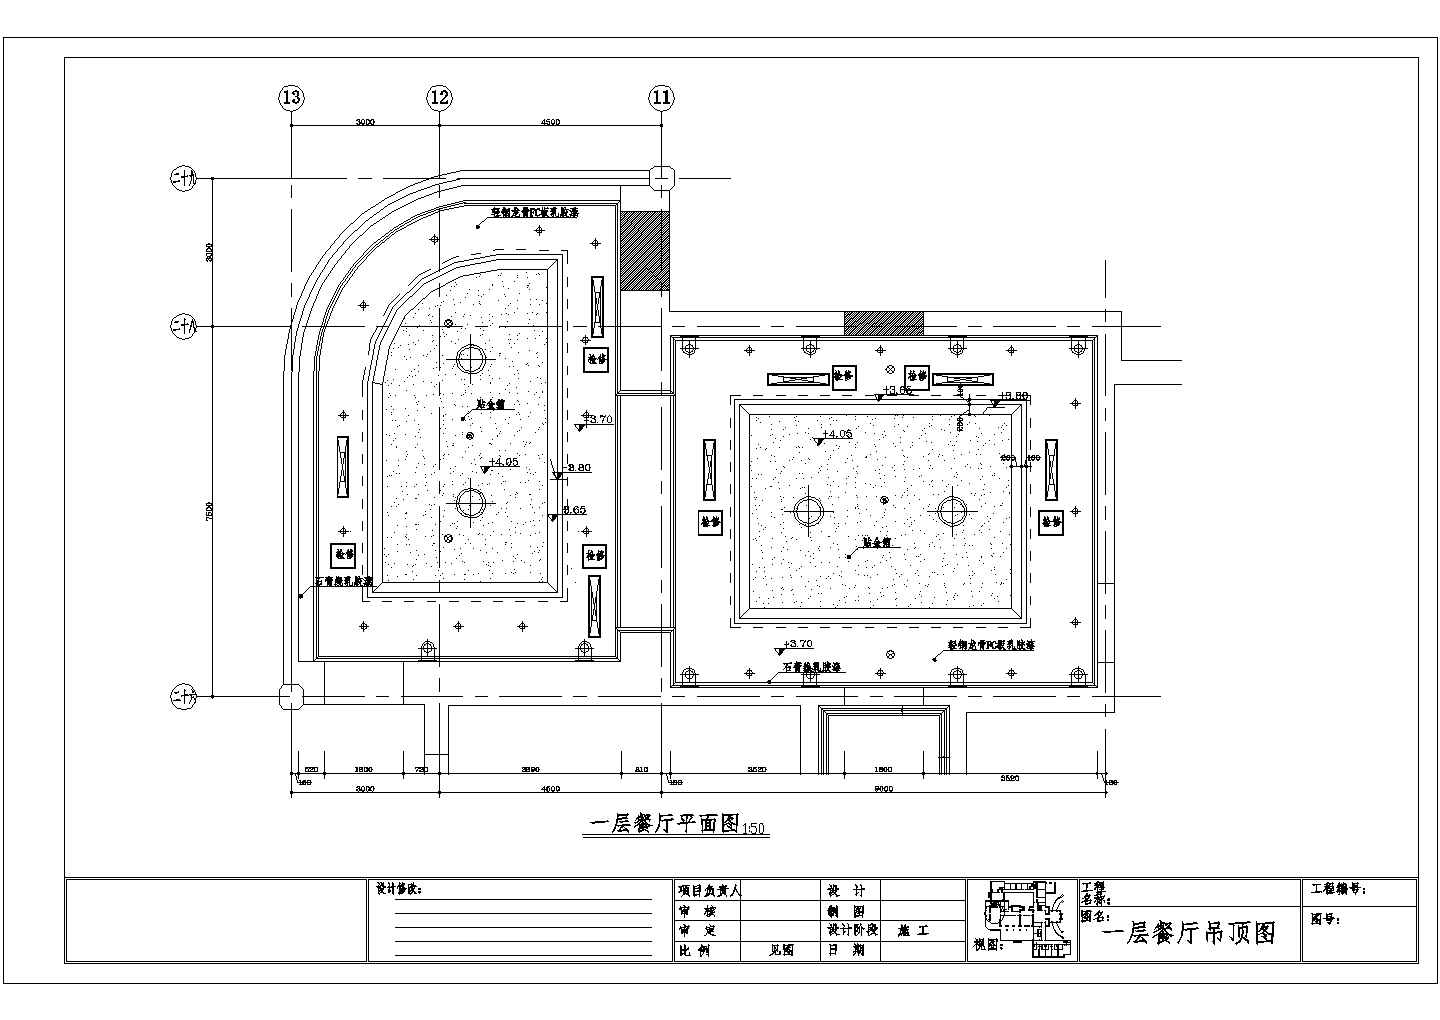 【杭州】某地景区多层餐厅装修施工设计图【平面图 室内立面图】